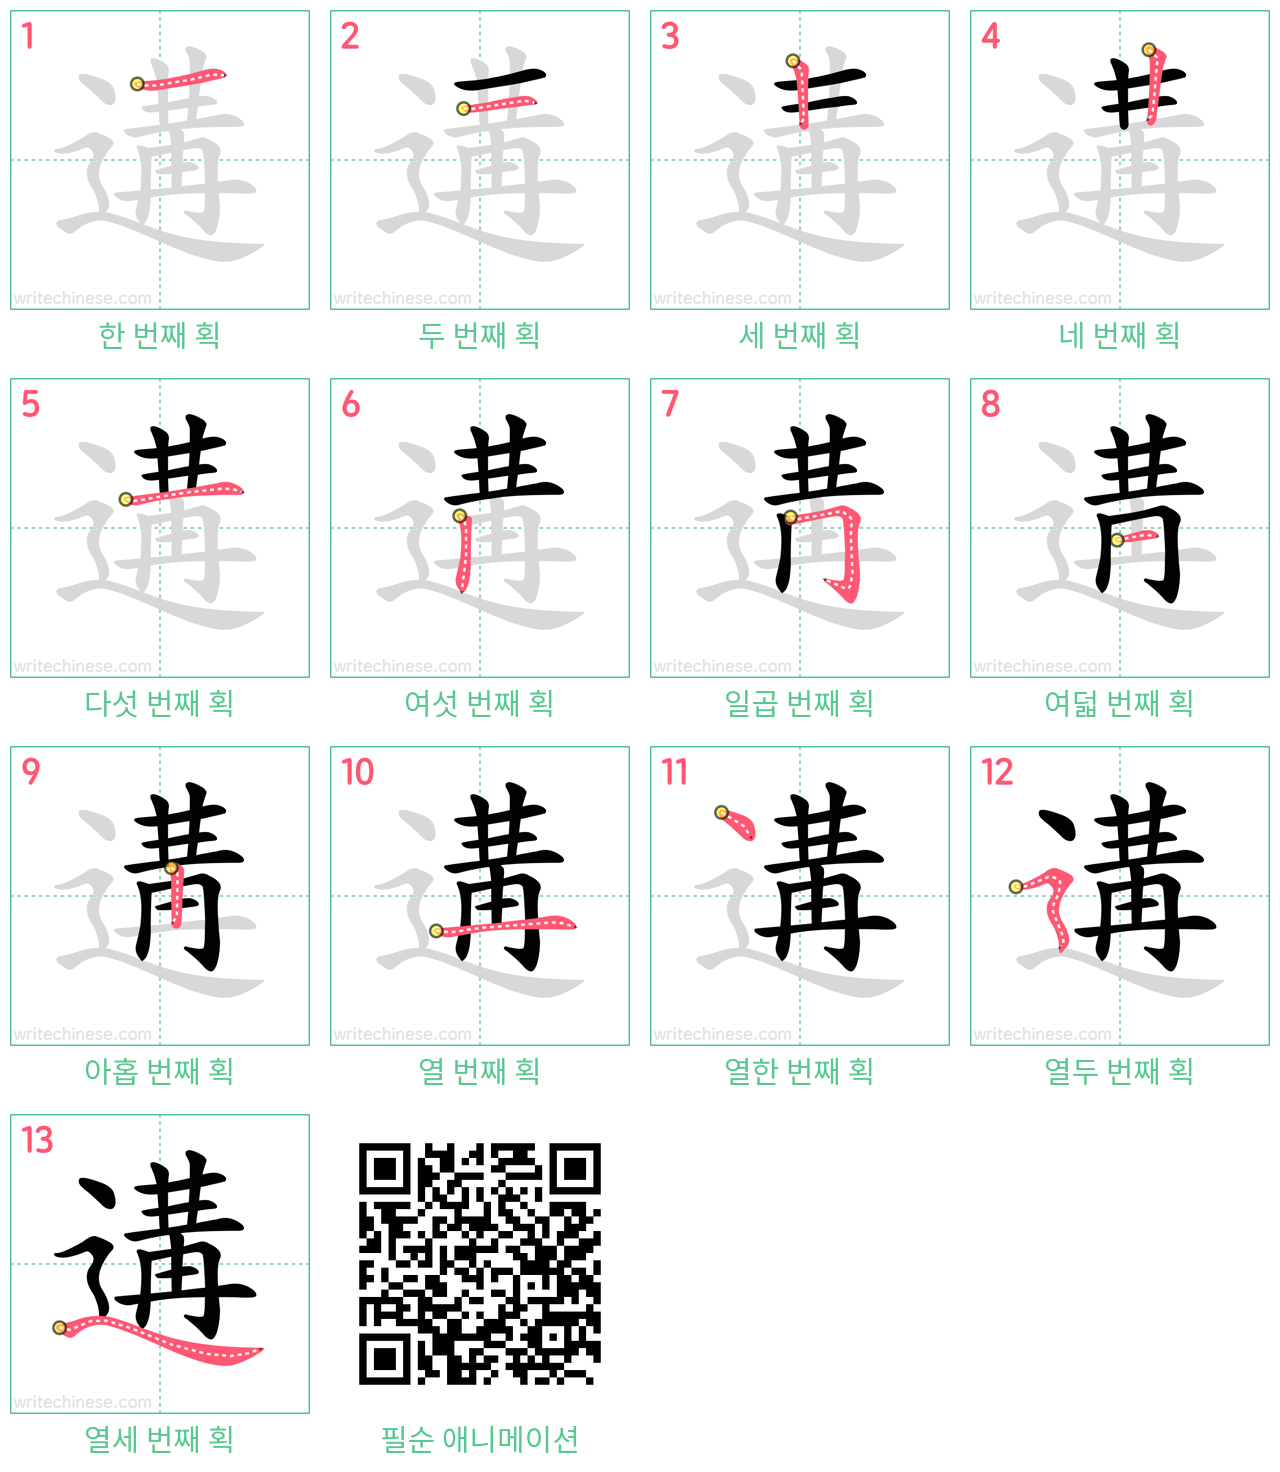 遘 step-by-step stroke order diagrams